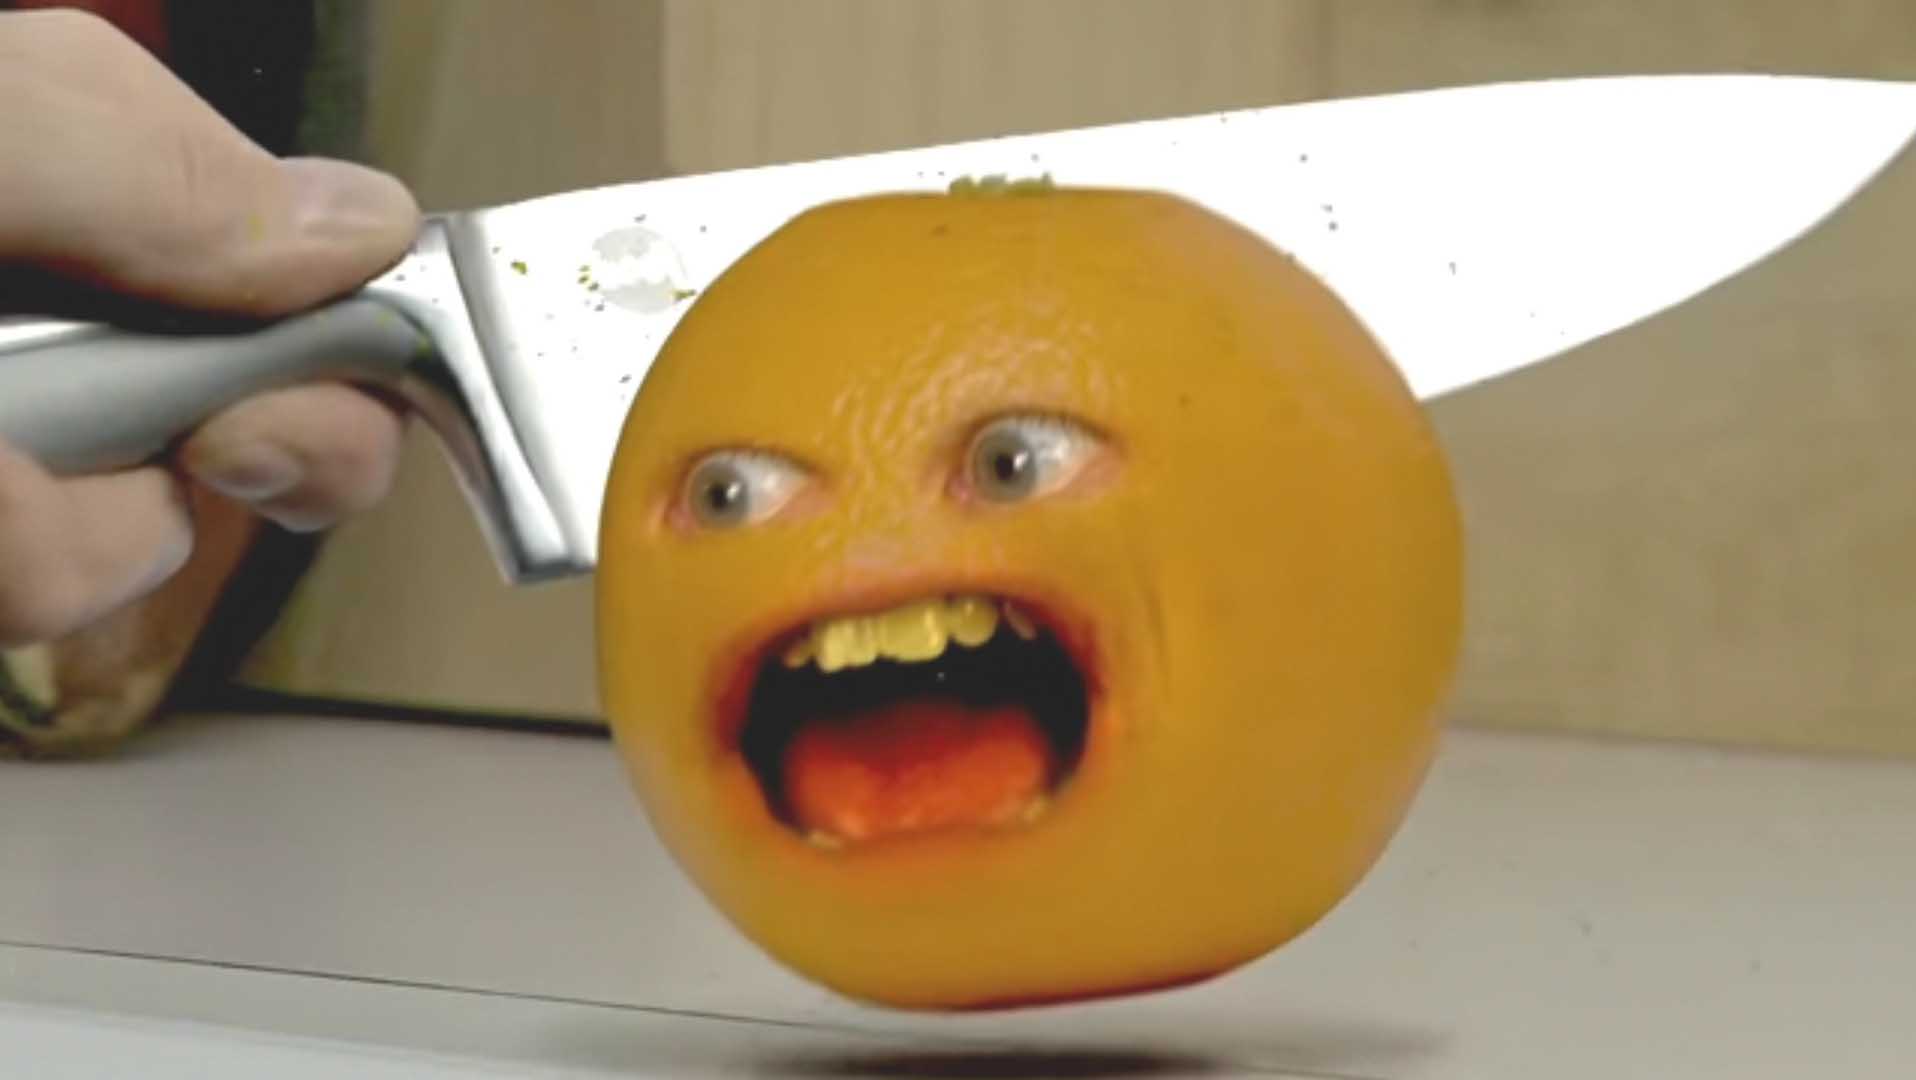 烦人的橙子表情包图片